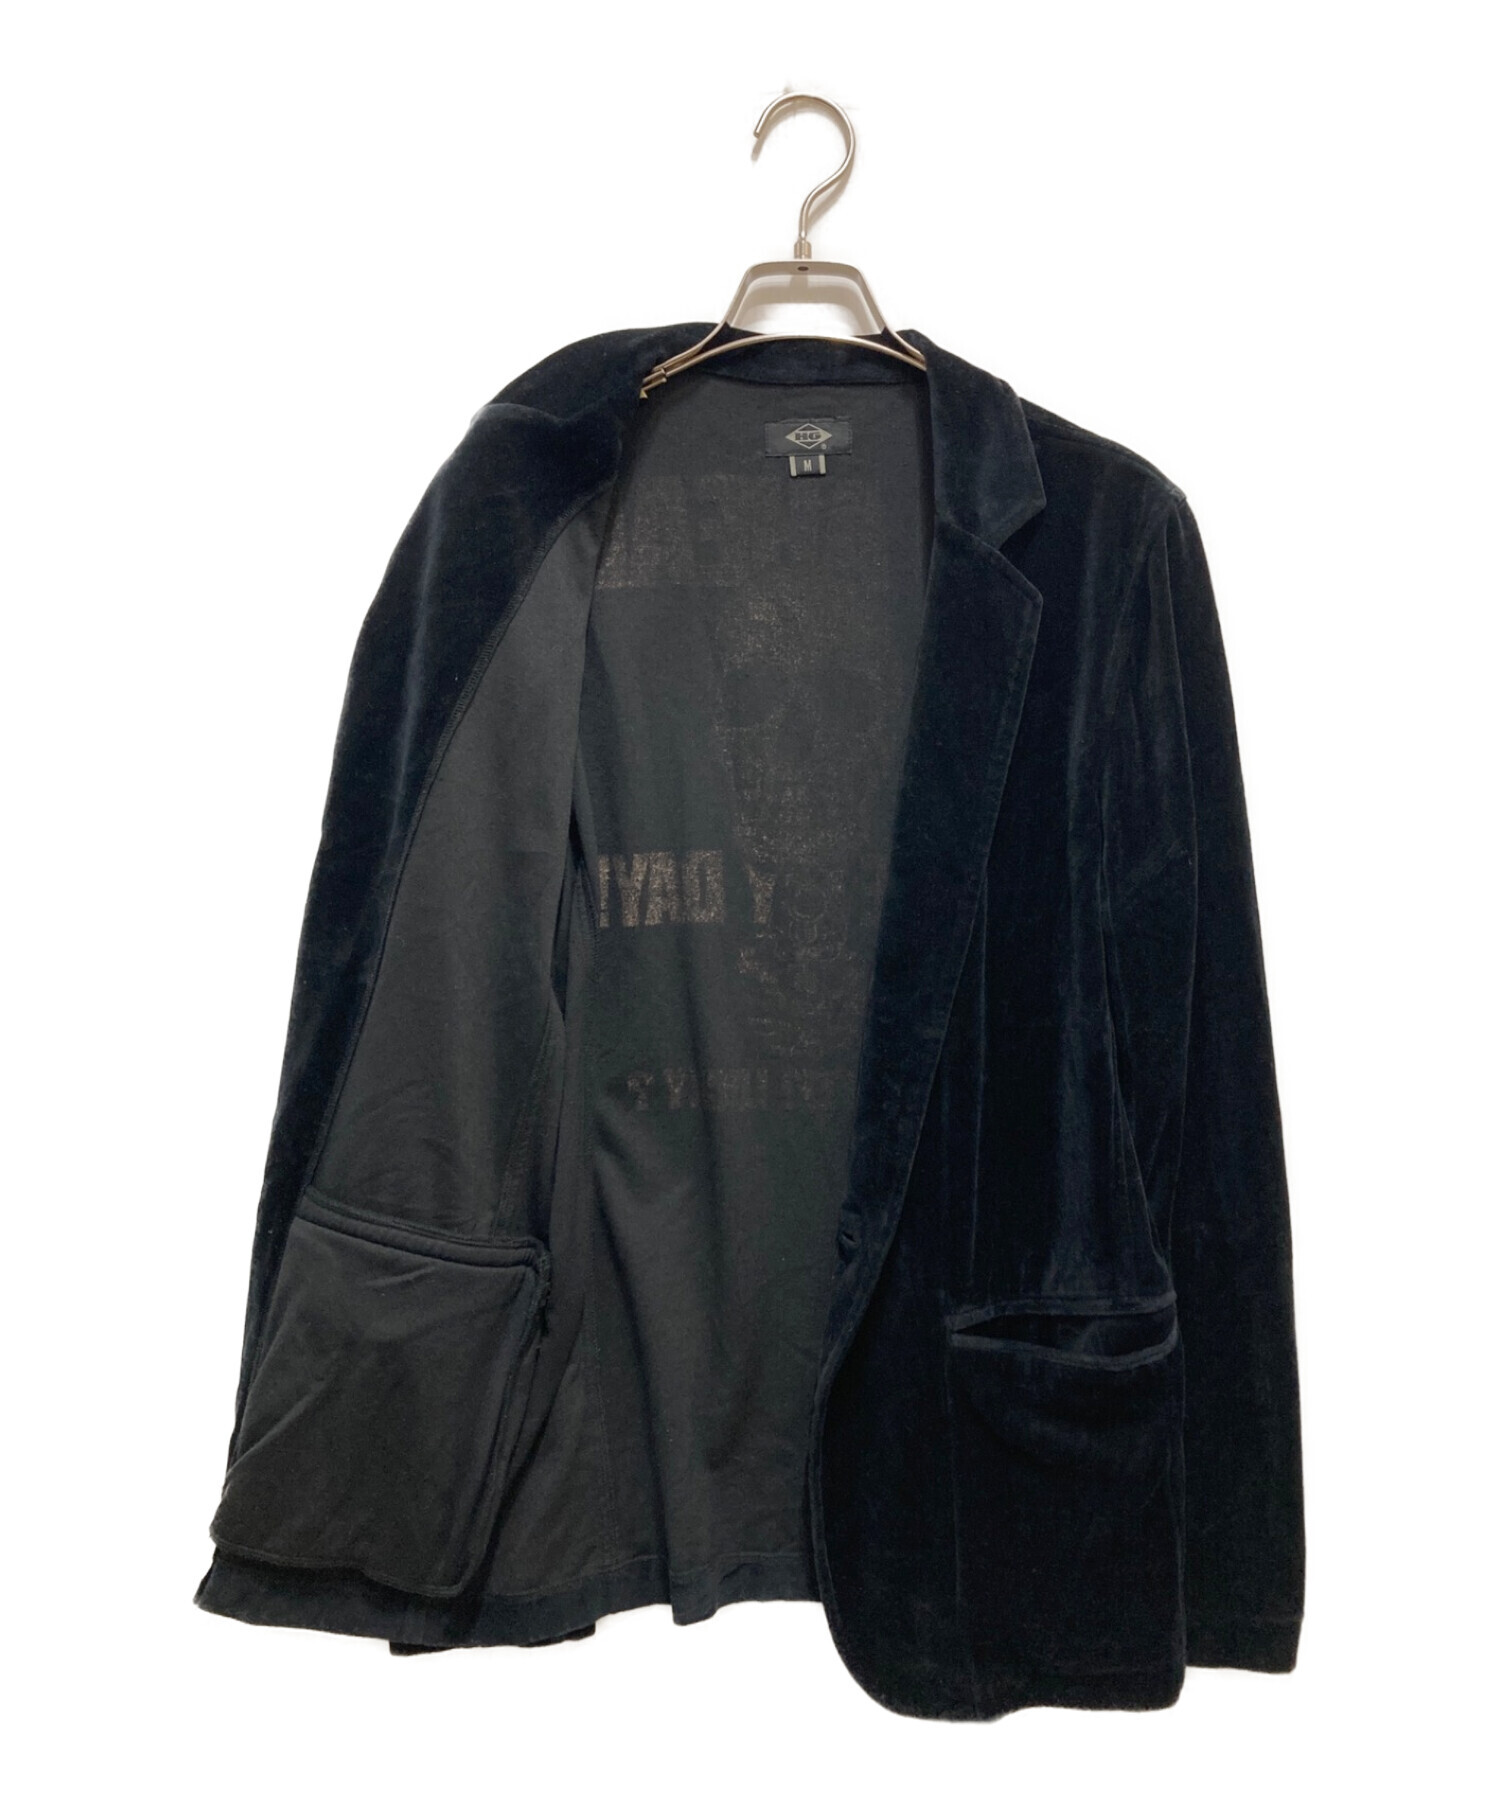 Hysteric Glamour (ヒステリックグラマー) スカルベロアジャケット ブラック サイズ:M